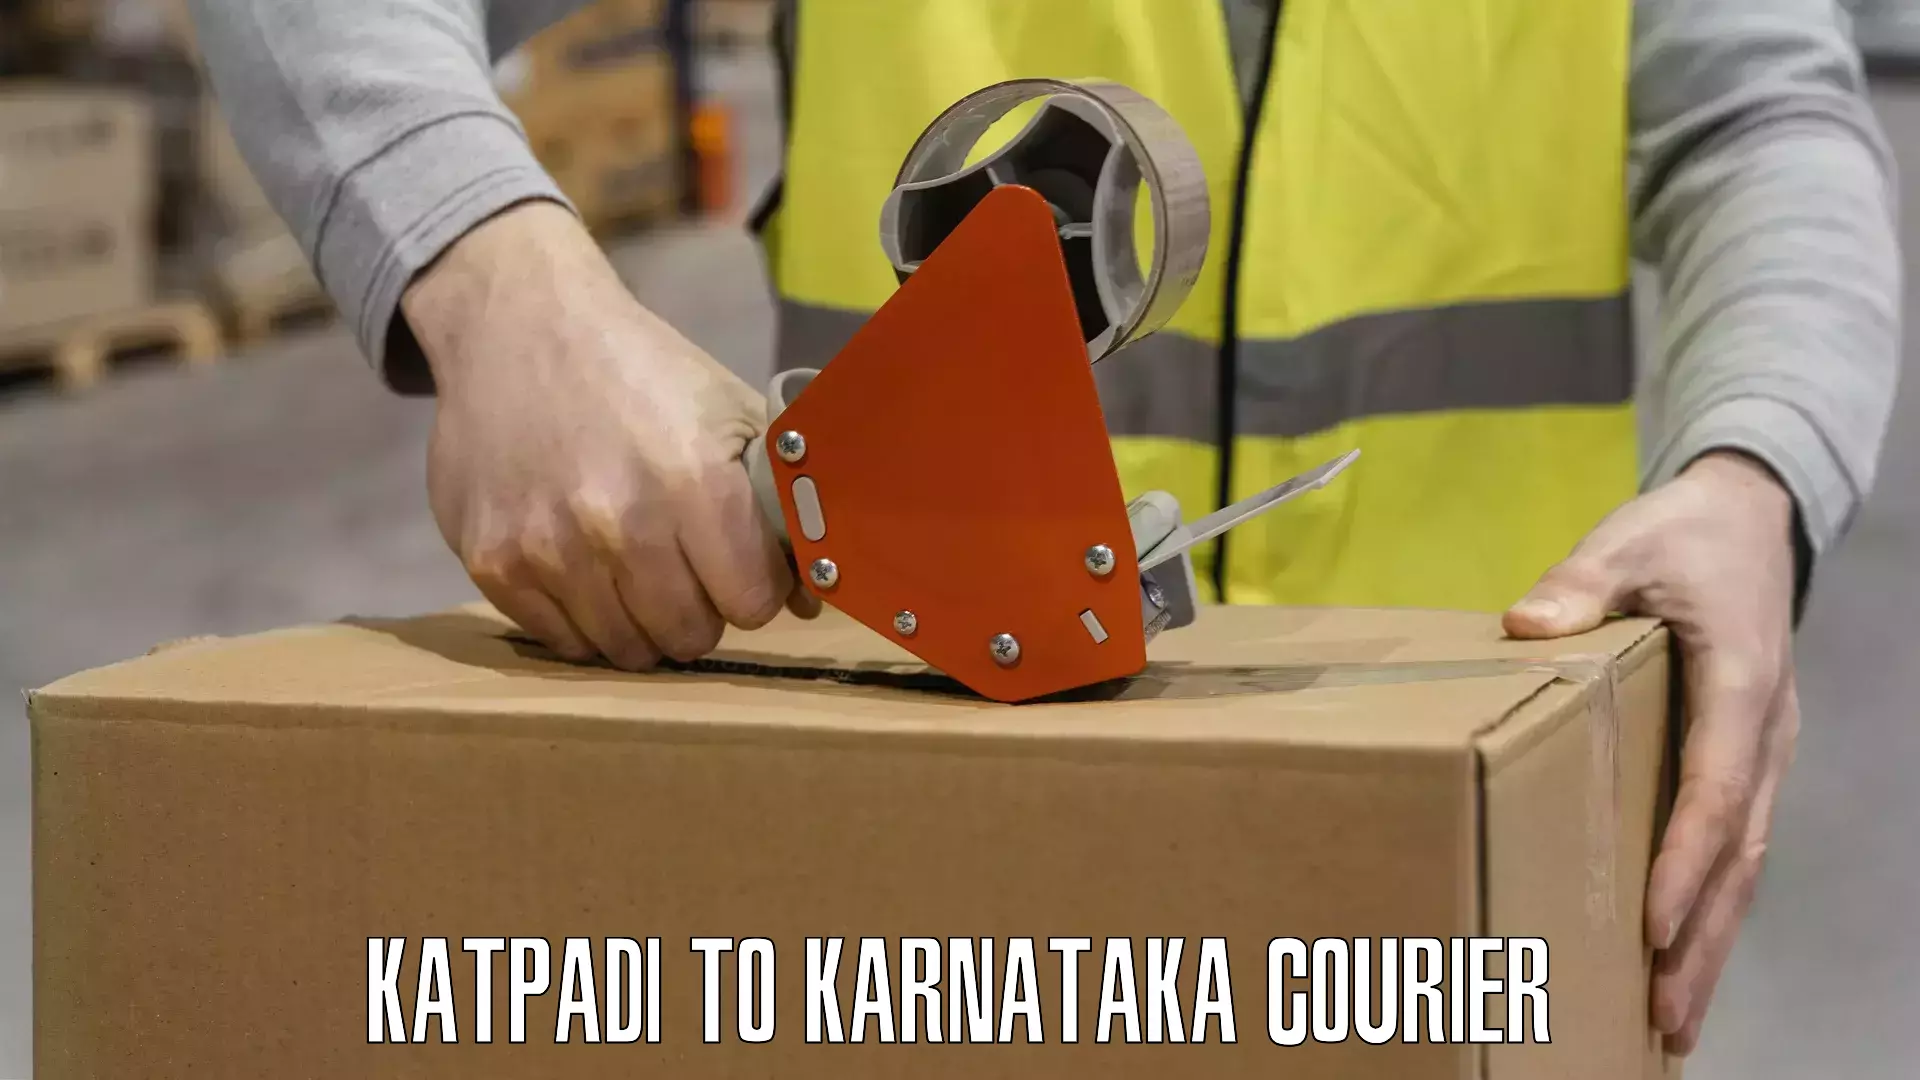 Cost-effective shipping solutions Katpadi to Karnataka